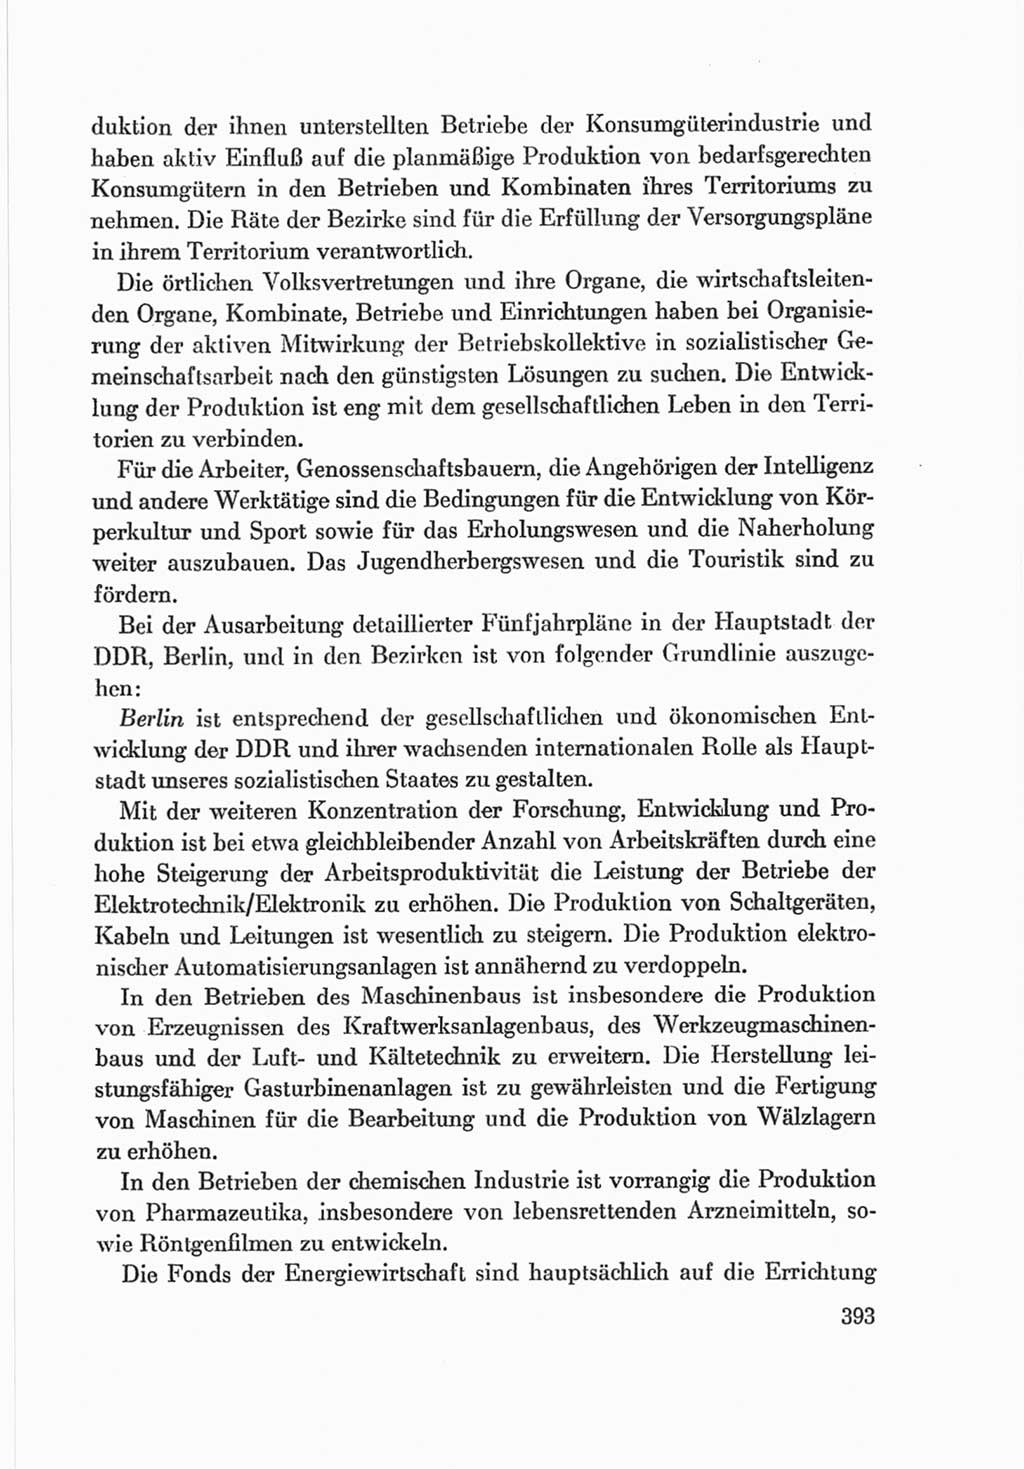 Protokoll der Verhandlungen des Ⅷ. Parteitages der Sozialistischen Einheitspartei Deutschlands (SED) [Deutsche Demokratische Republik (DDR)] 1971, Band 2, Seite 393 (Prot. Verh. Ⅷ. PT SED DDR 1971, Bd. 2, S. 393)